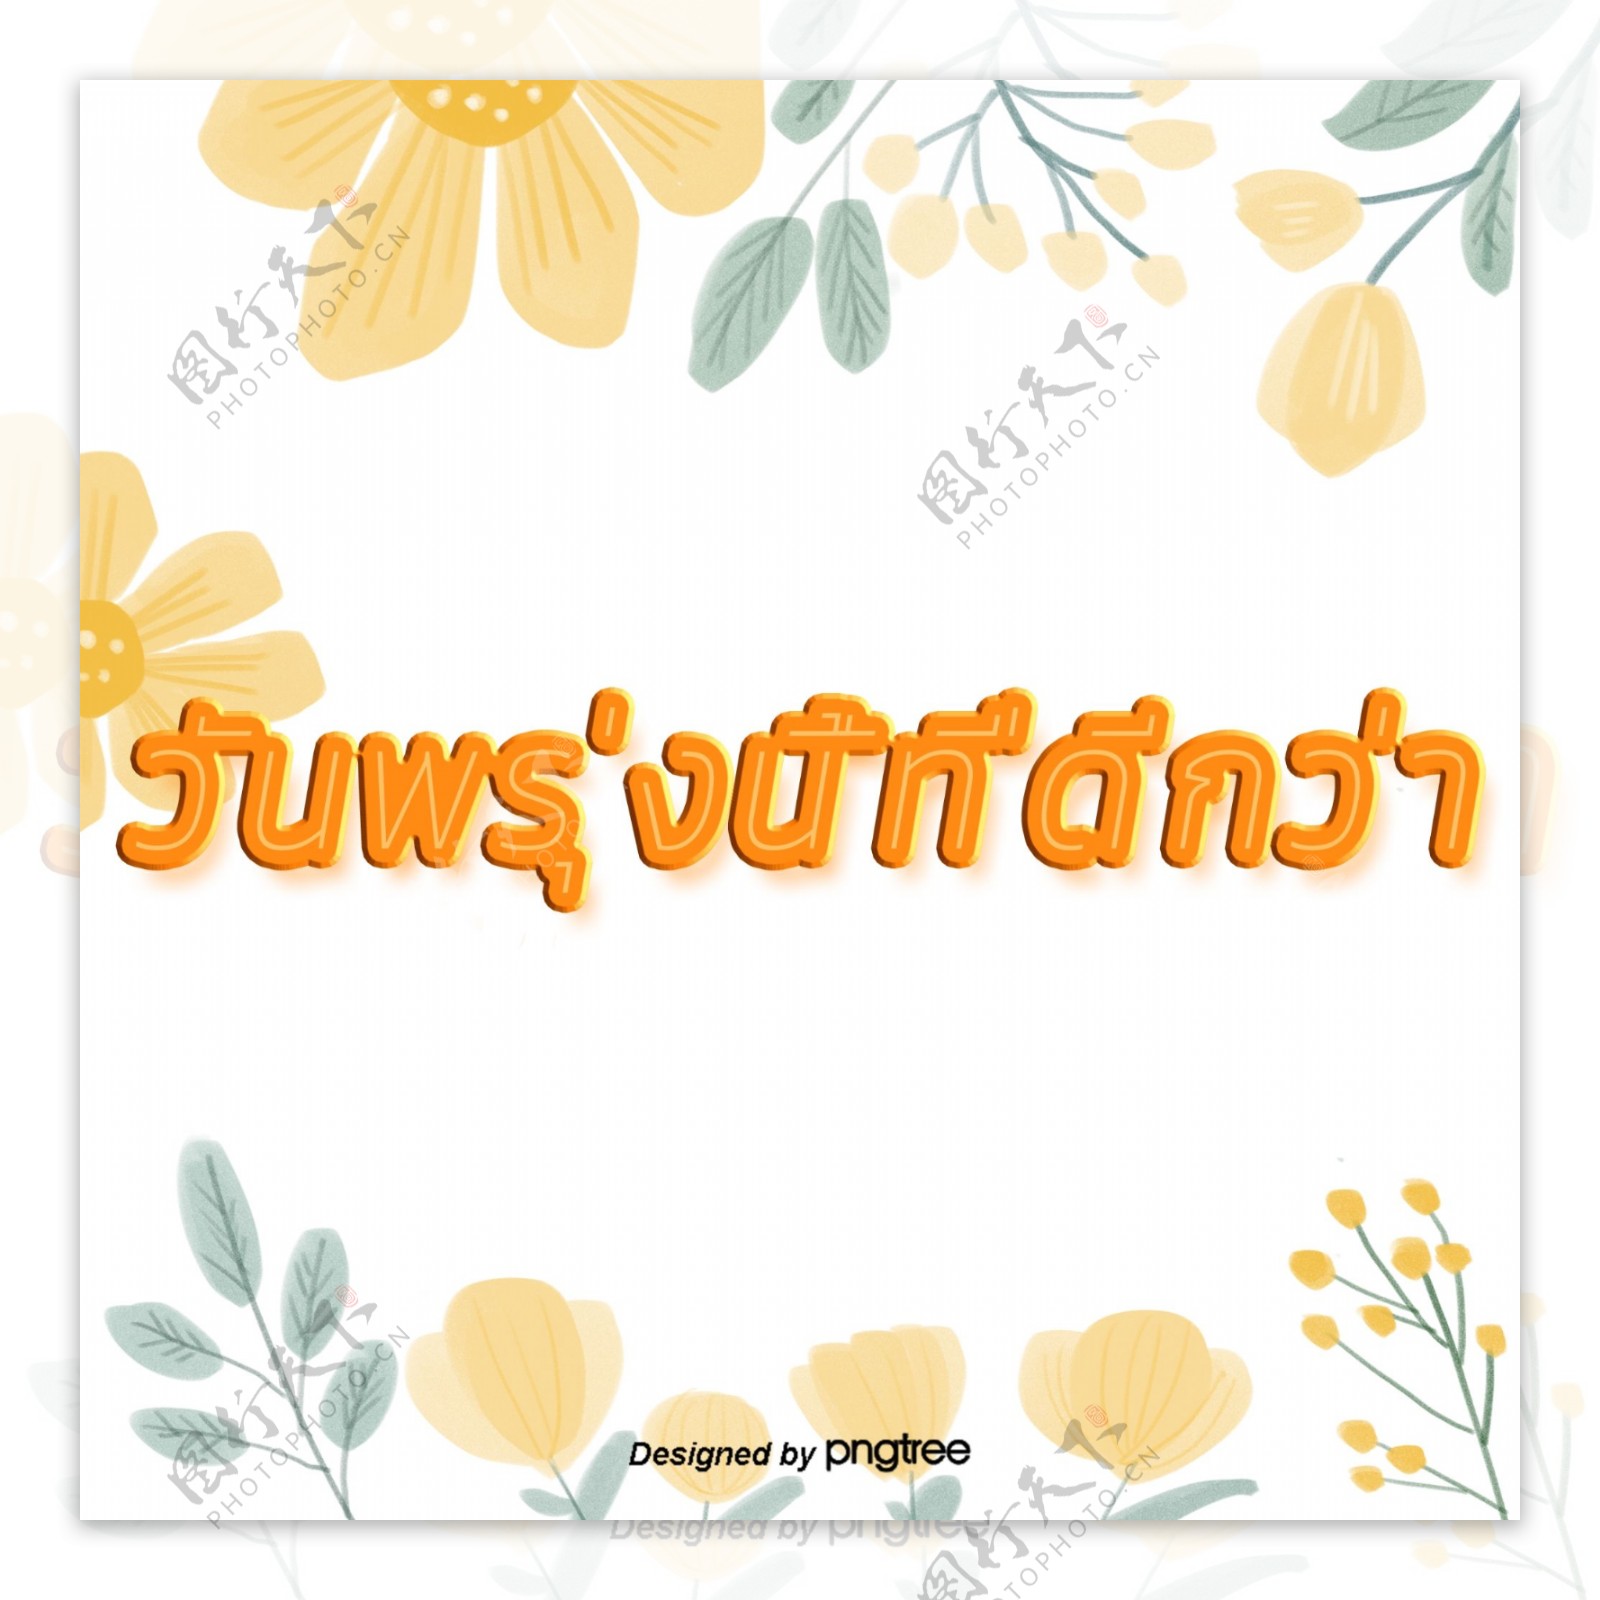 泰国字母的字体颜色黄绿色花朵的美好明天